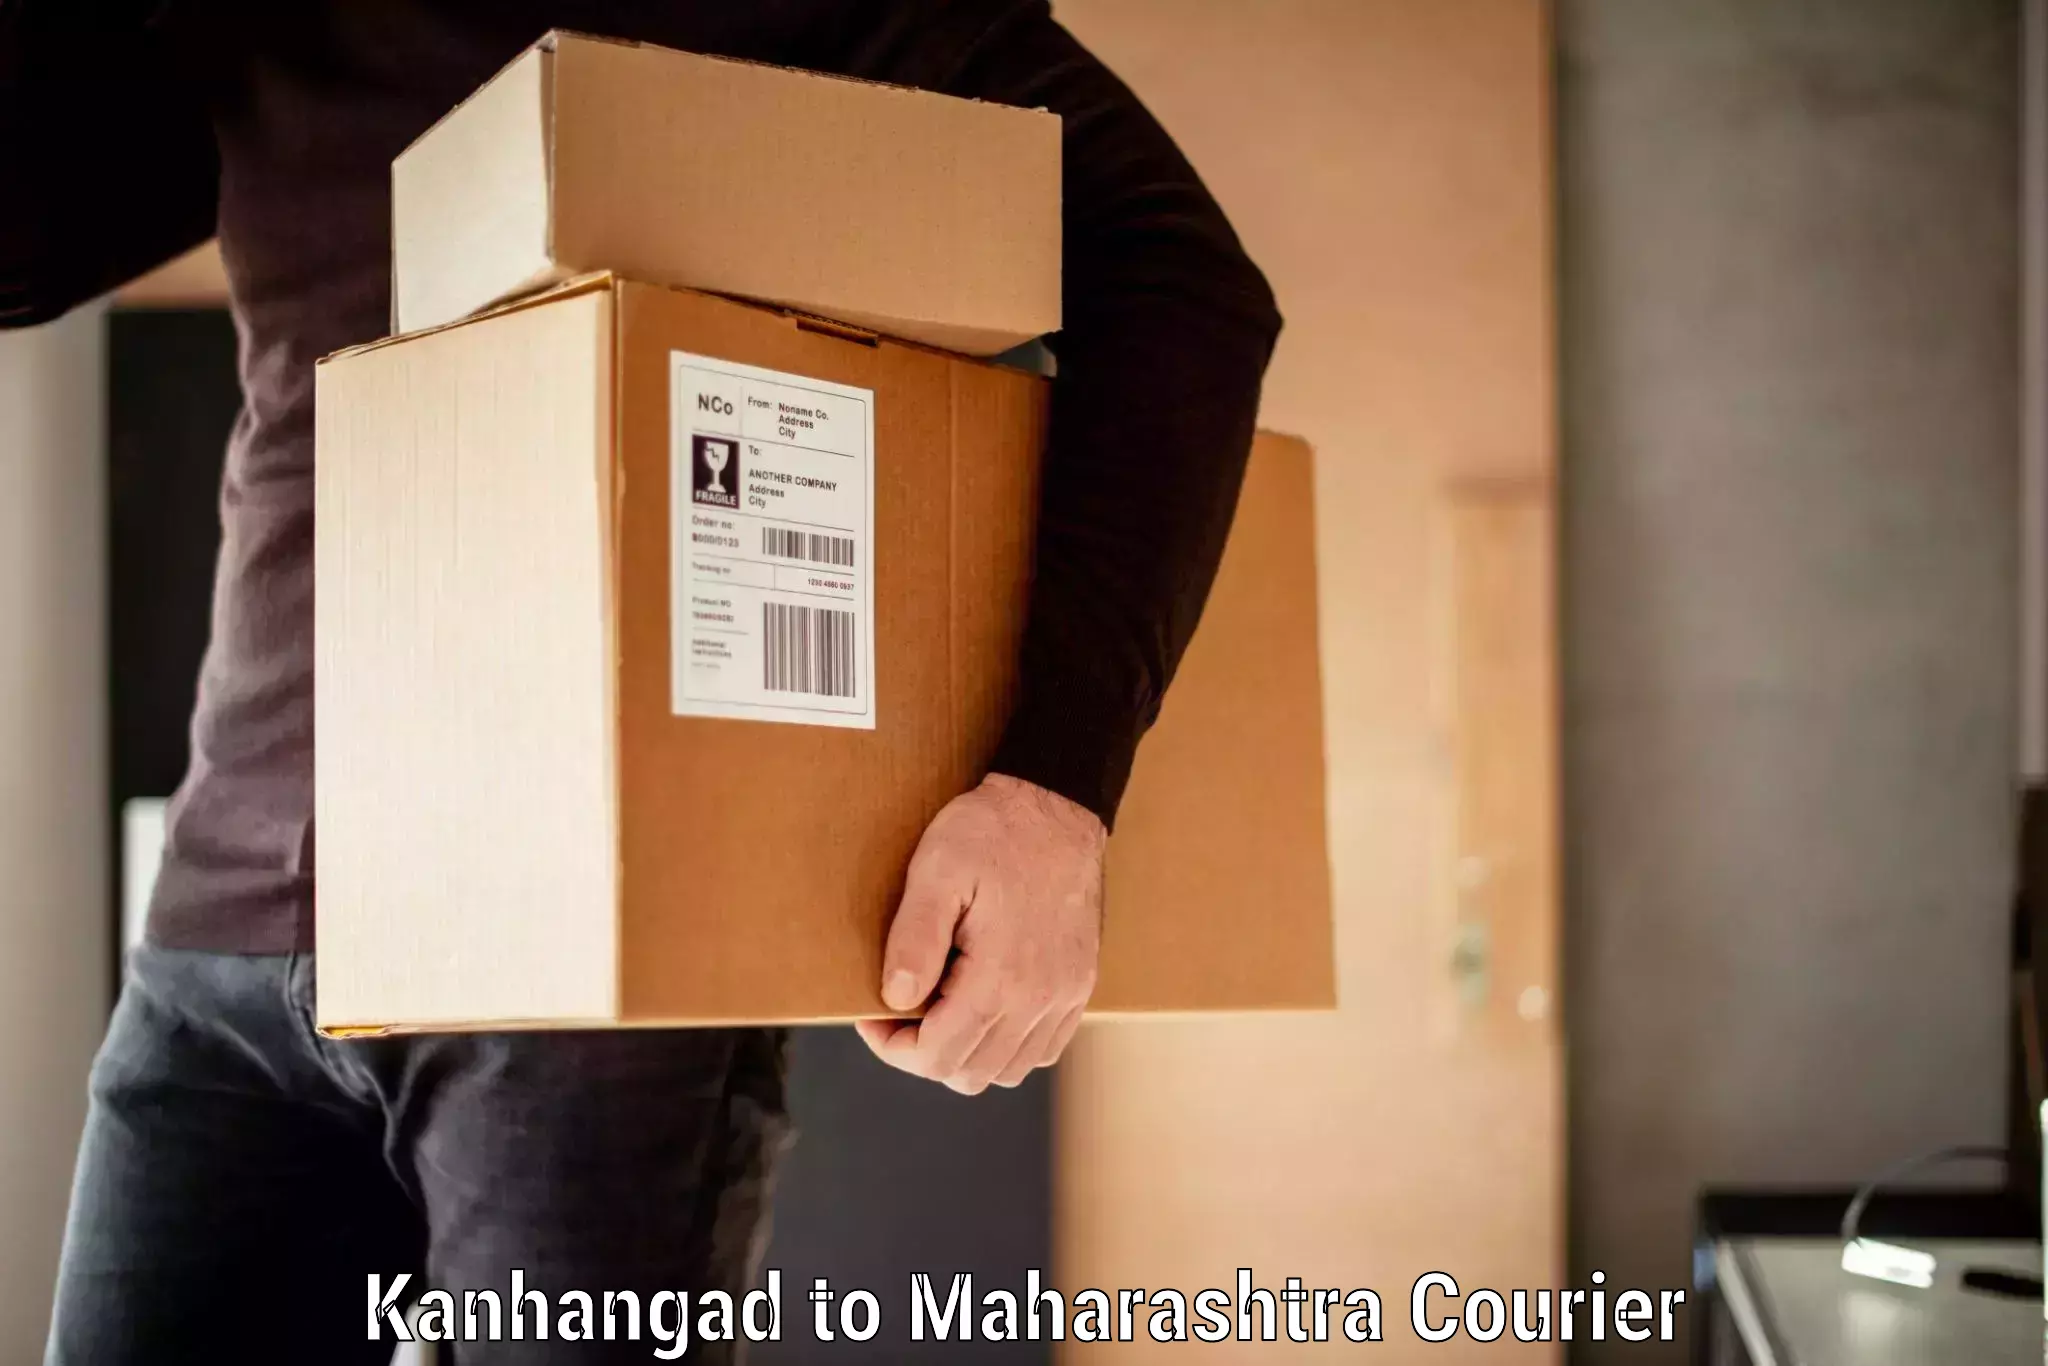 Baggage shipping experts Kanhangad to Nandurbar